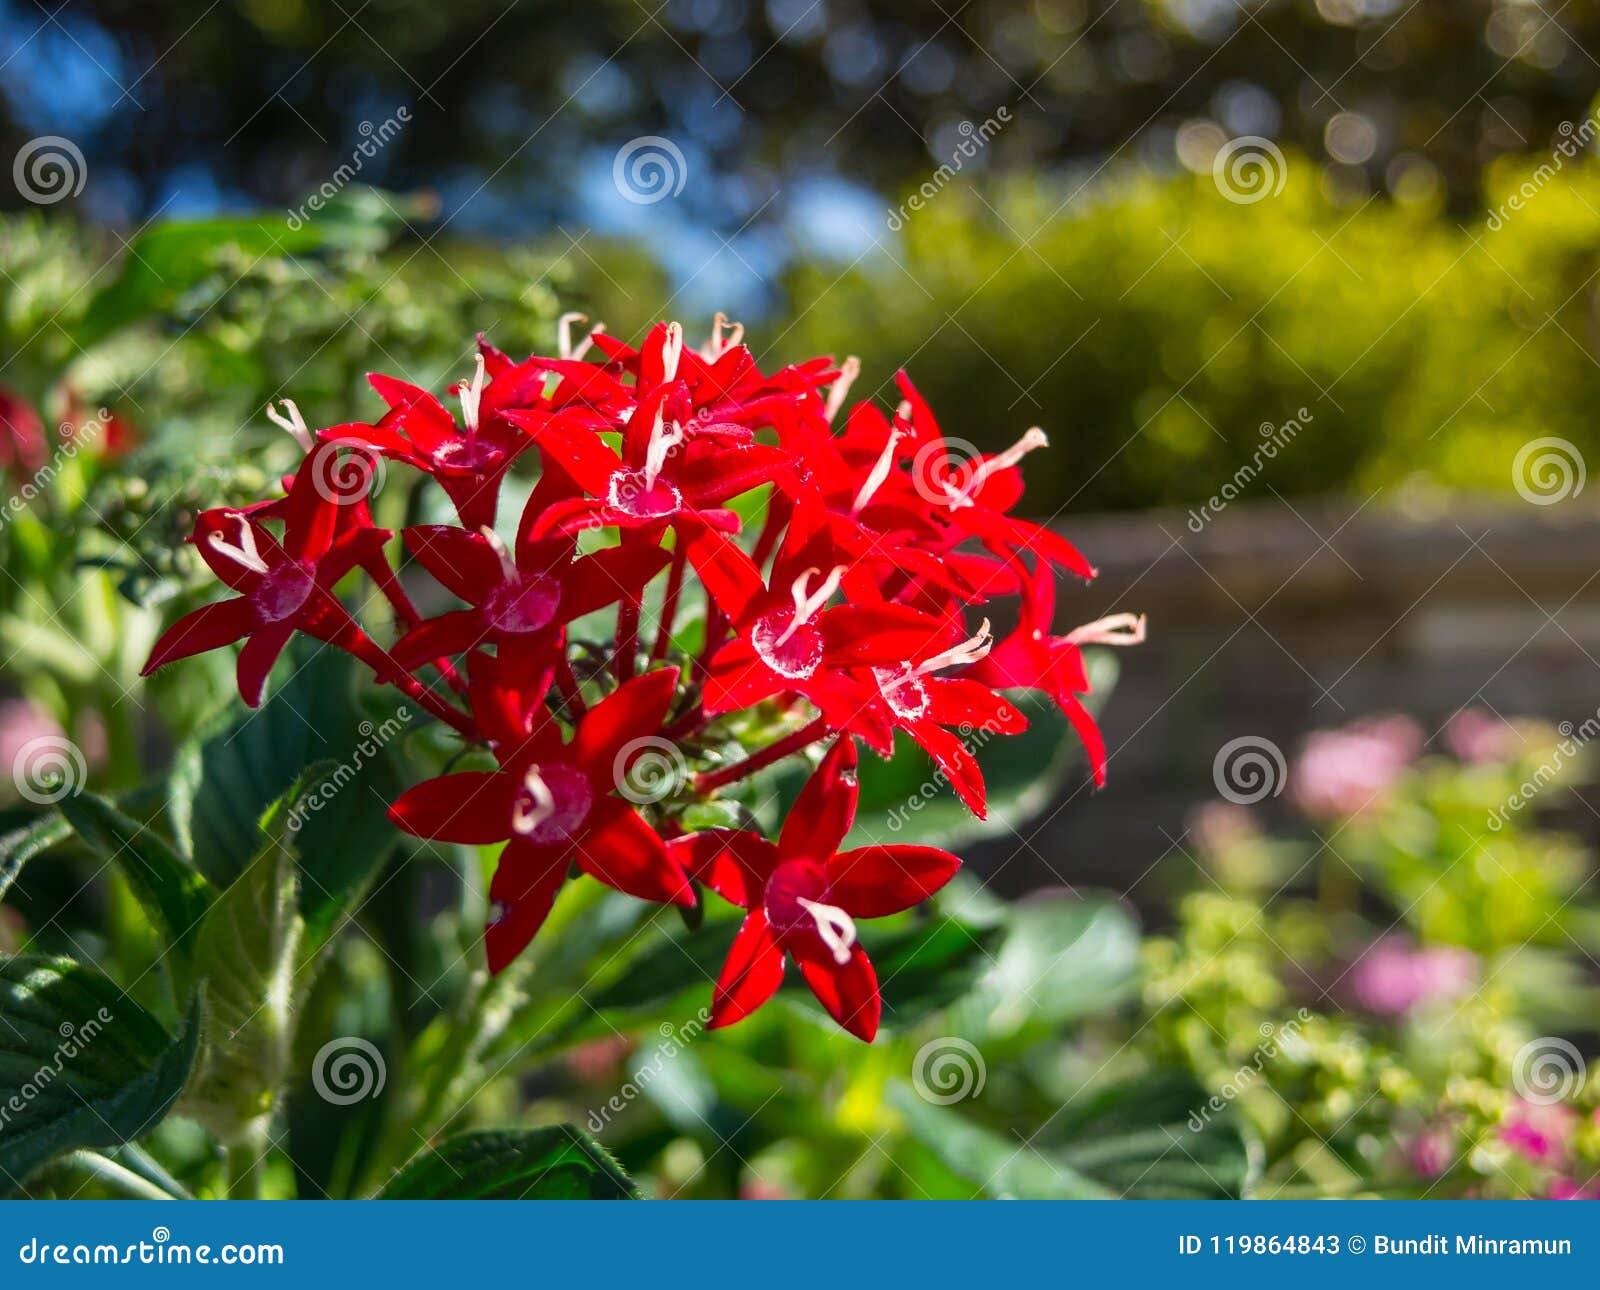 red pentas lanceolata lucky star in a summer at a botanical garden.